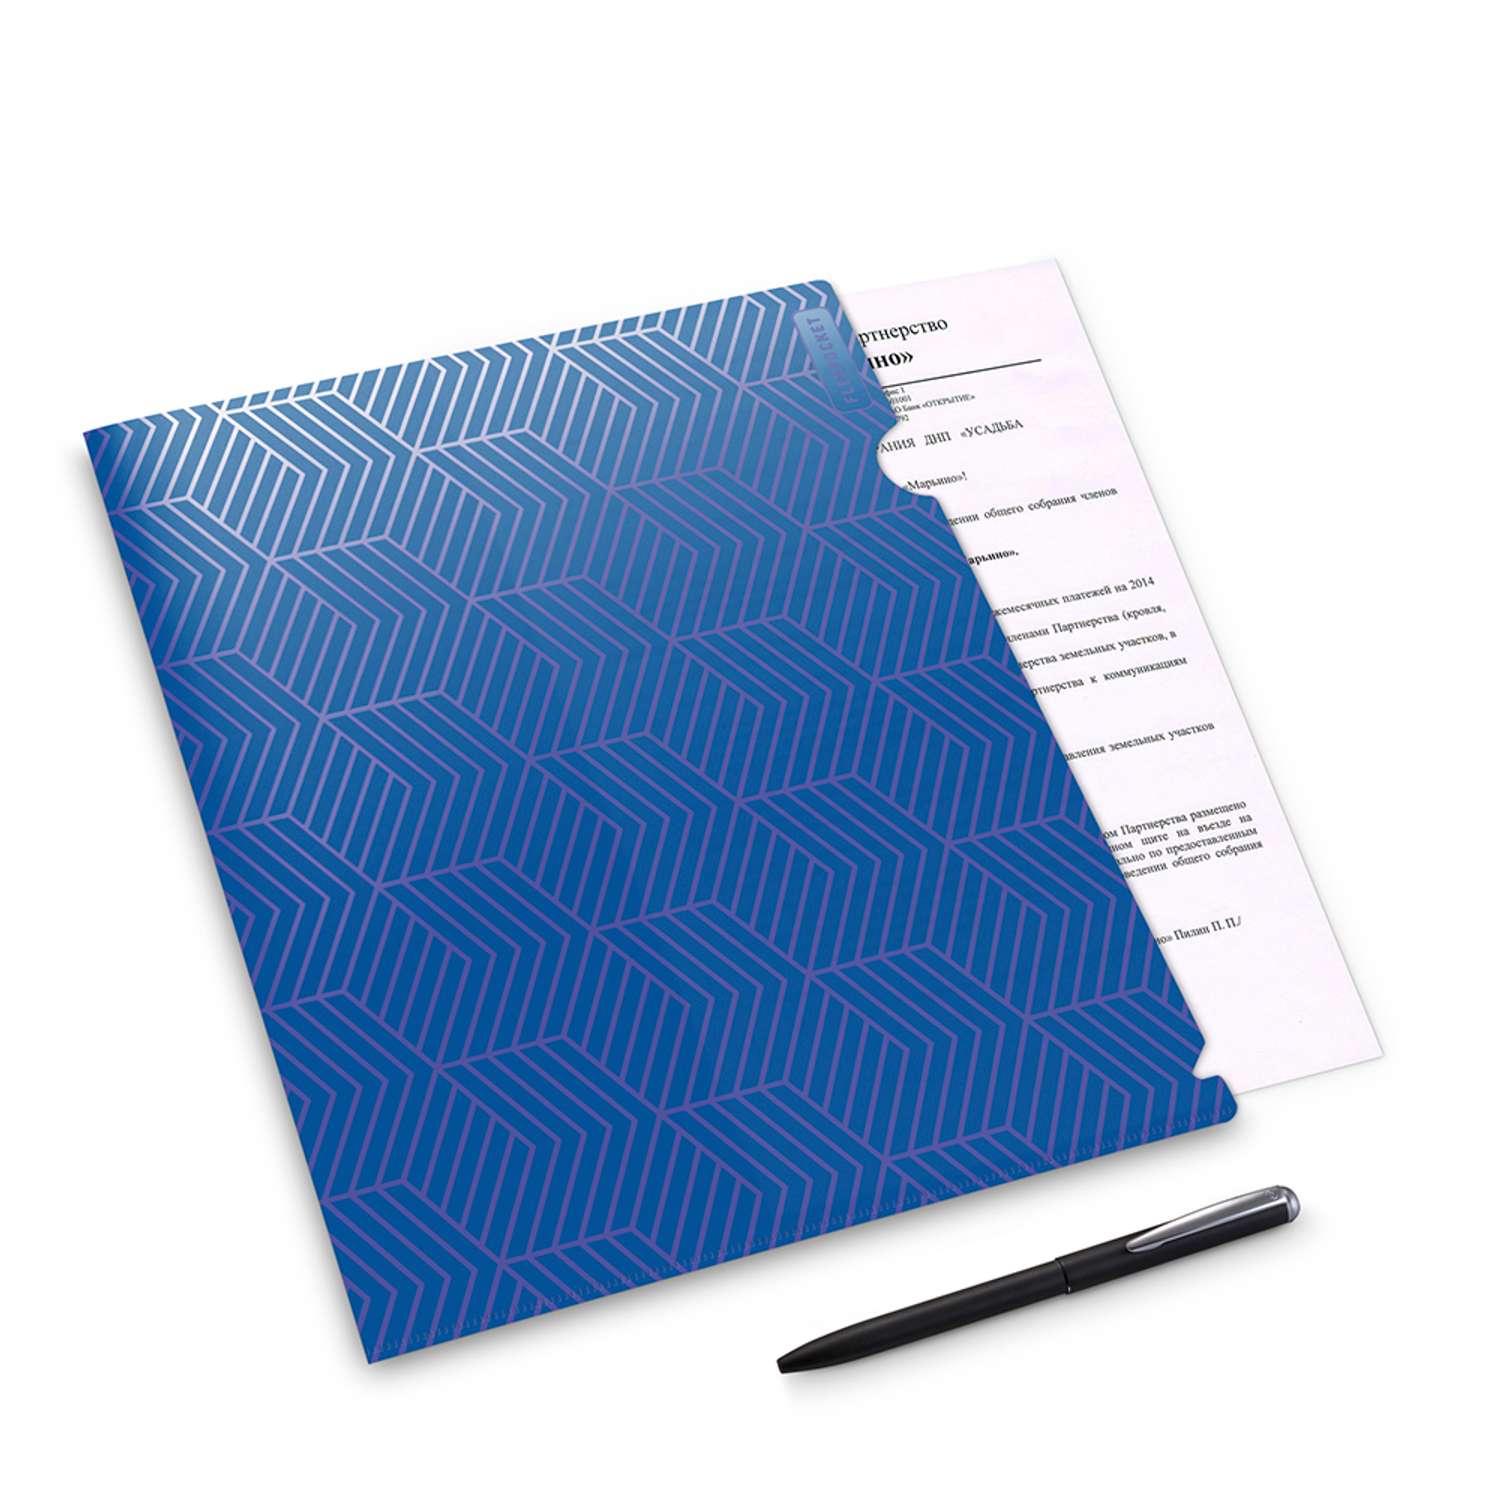 Папка-уголок для документов Flexpocket канцелярская синего цвета в комплекте 2 шт - фото 2